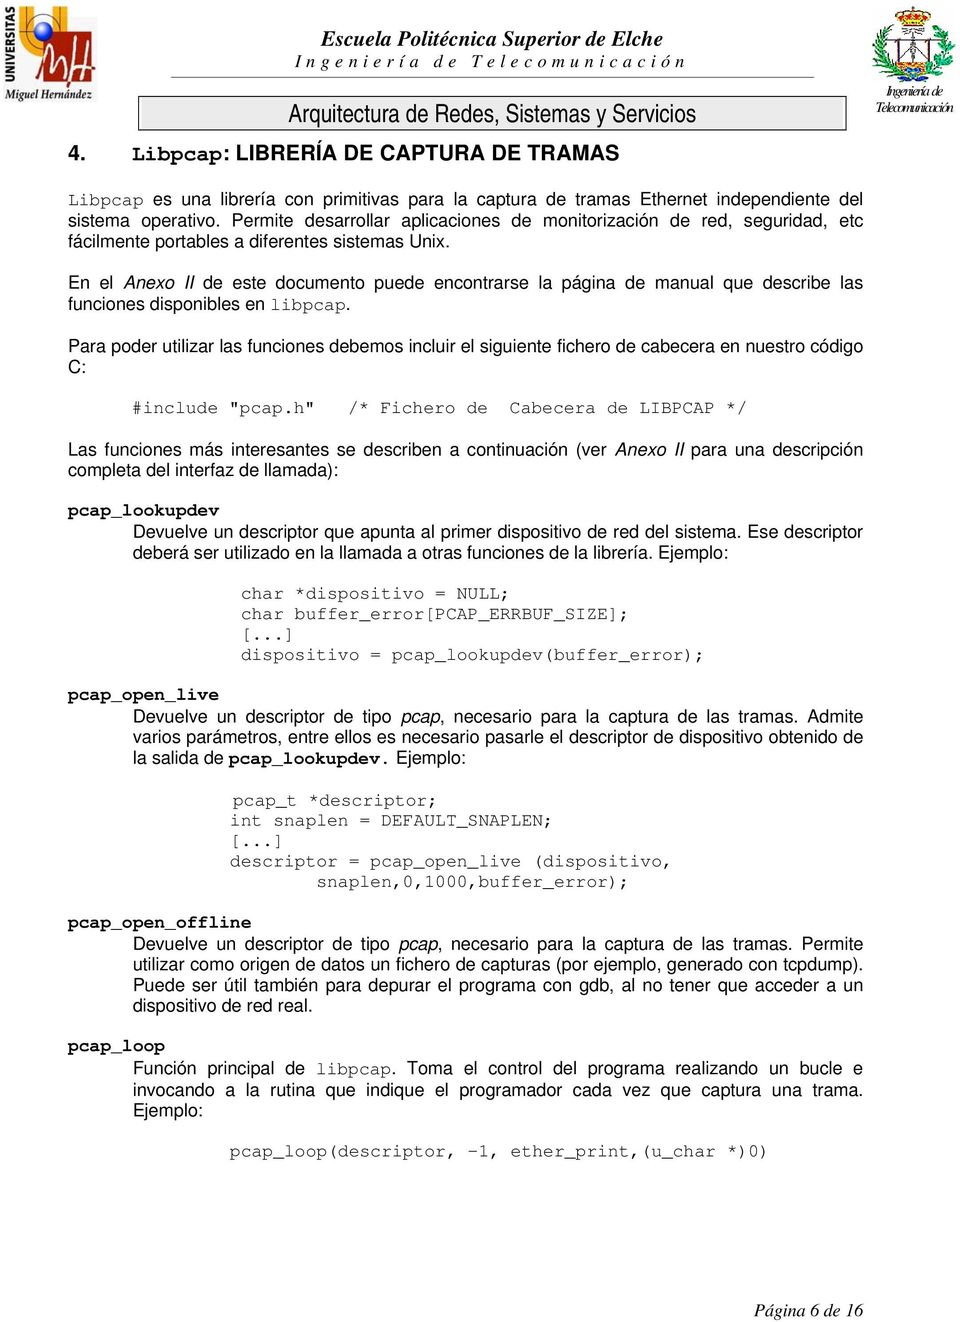 En el Anexo II de este documento puede encontrarse la página de manual que describe las funciones disponibles en libpcap.